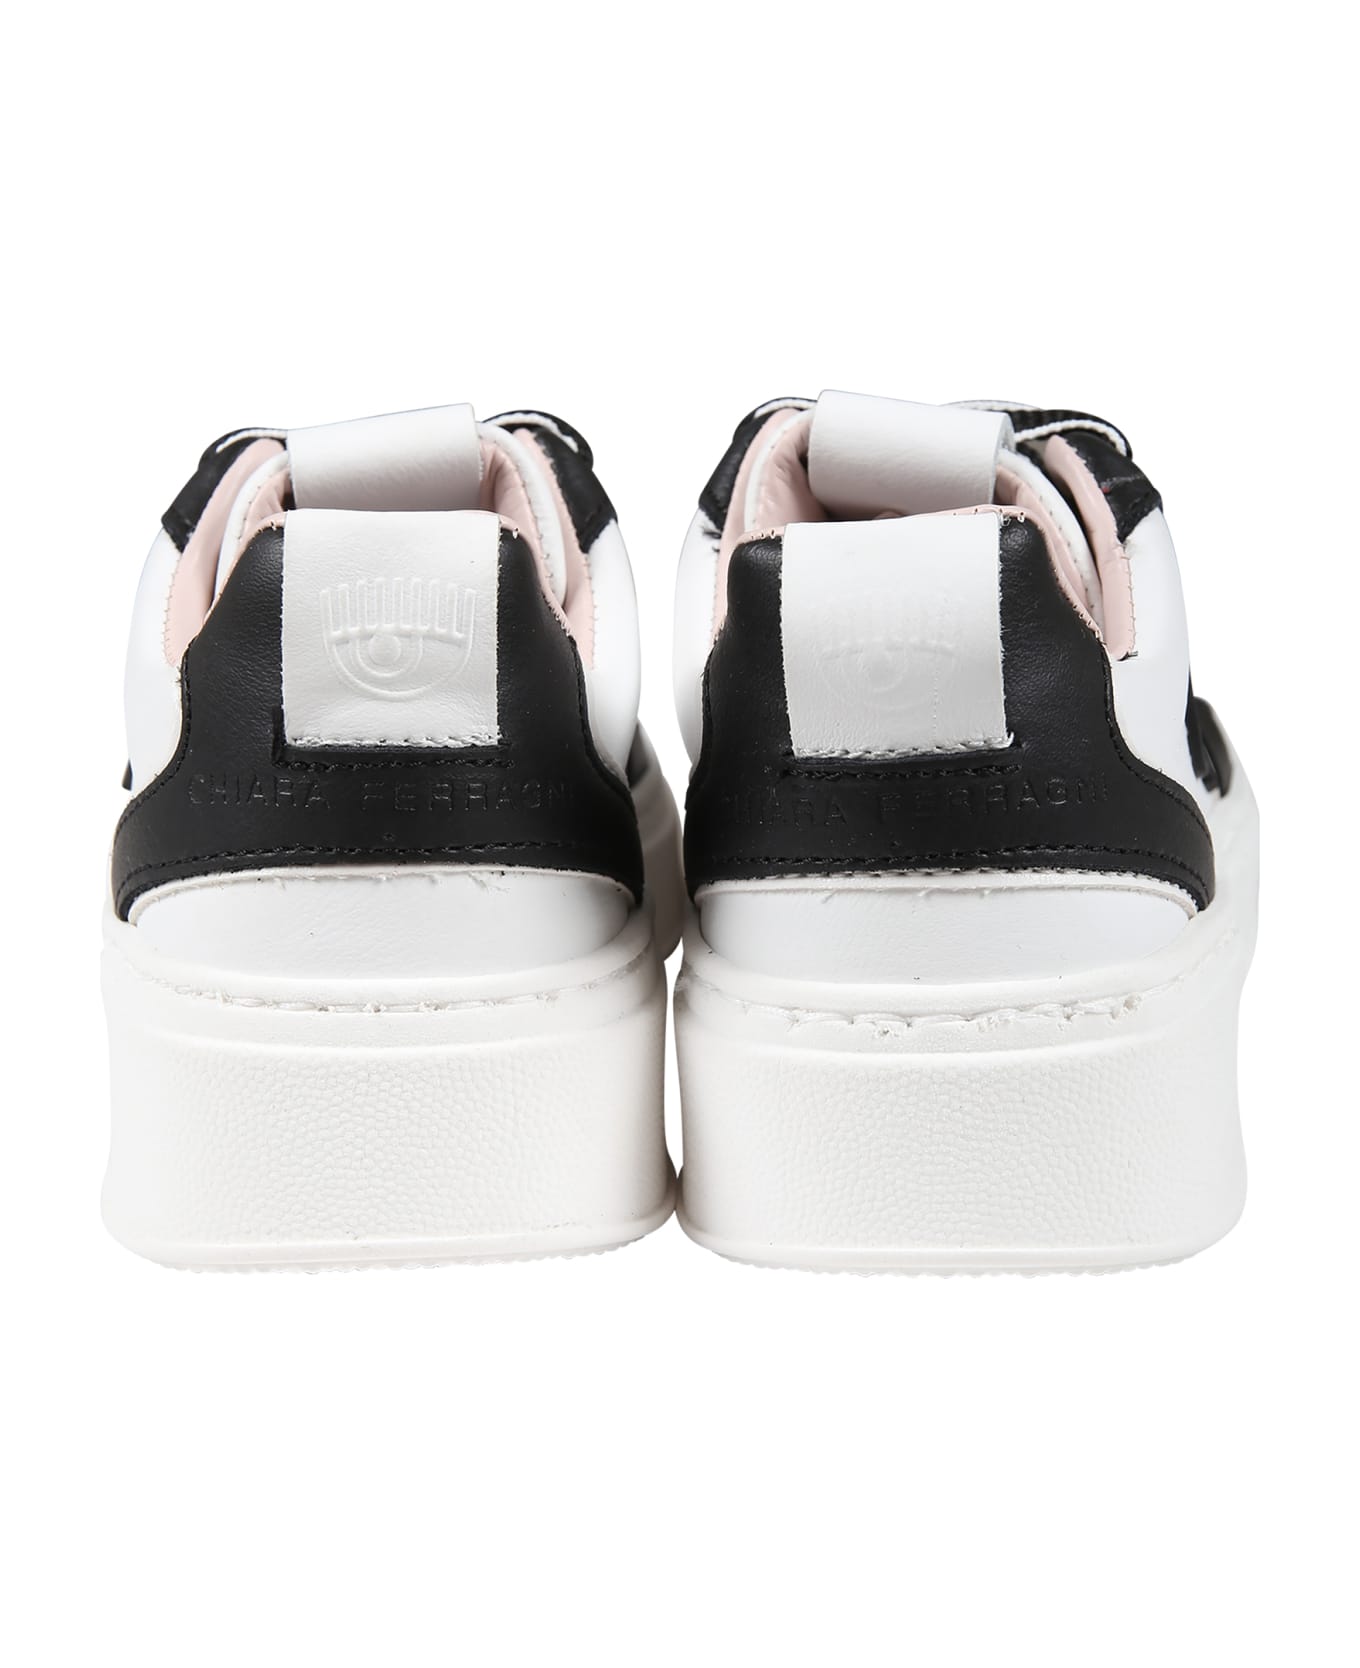 Chiara Ferragni White Sneakers For Girl With Eyestar - Multicolor